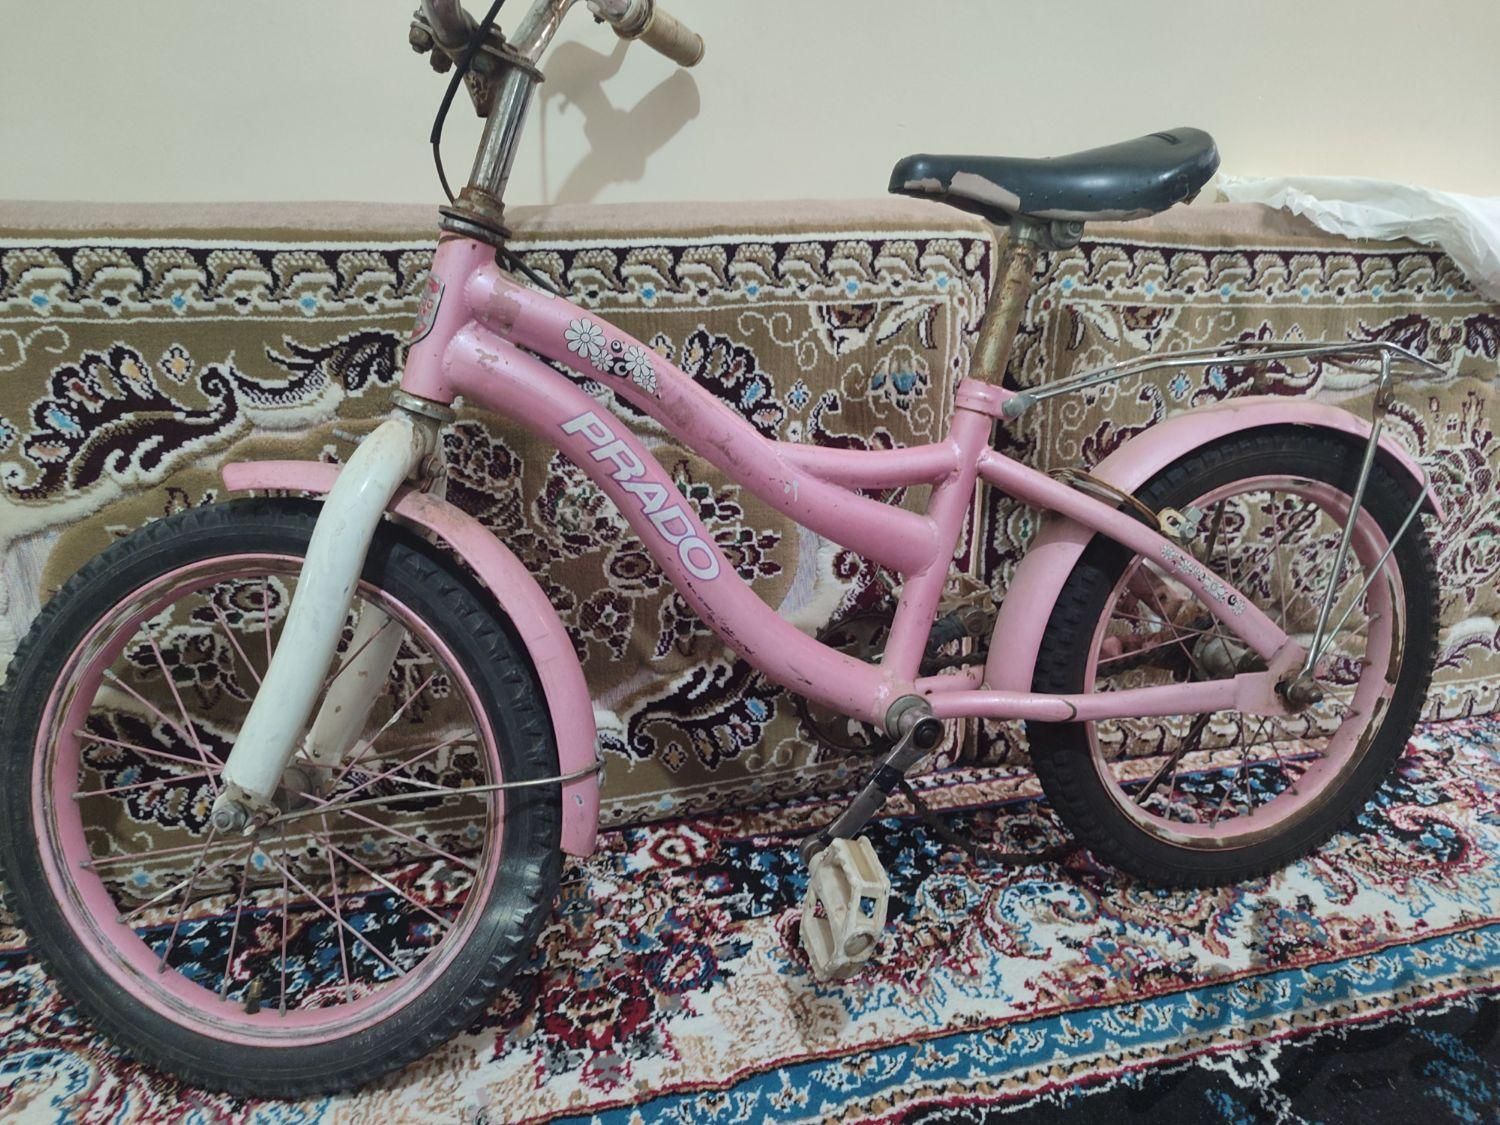 دوچرخه|دوچرخه، اسکیت، اسکوتر|کرج, حیدرآباد|دیوار